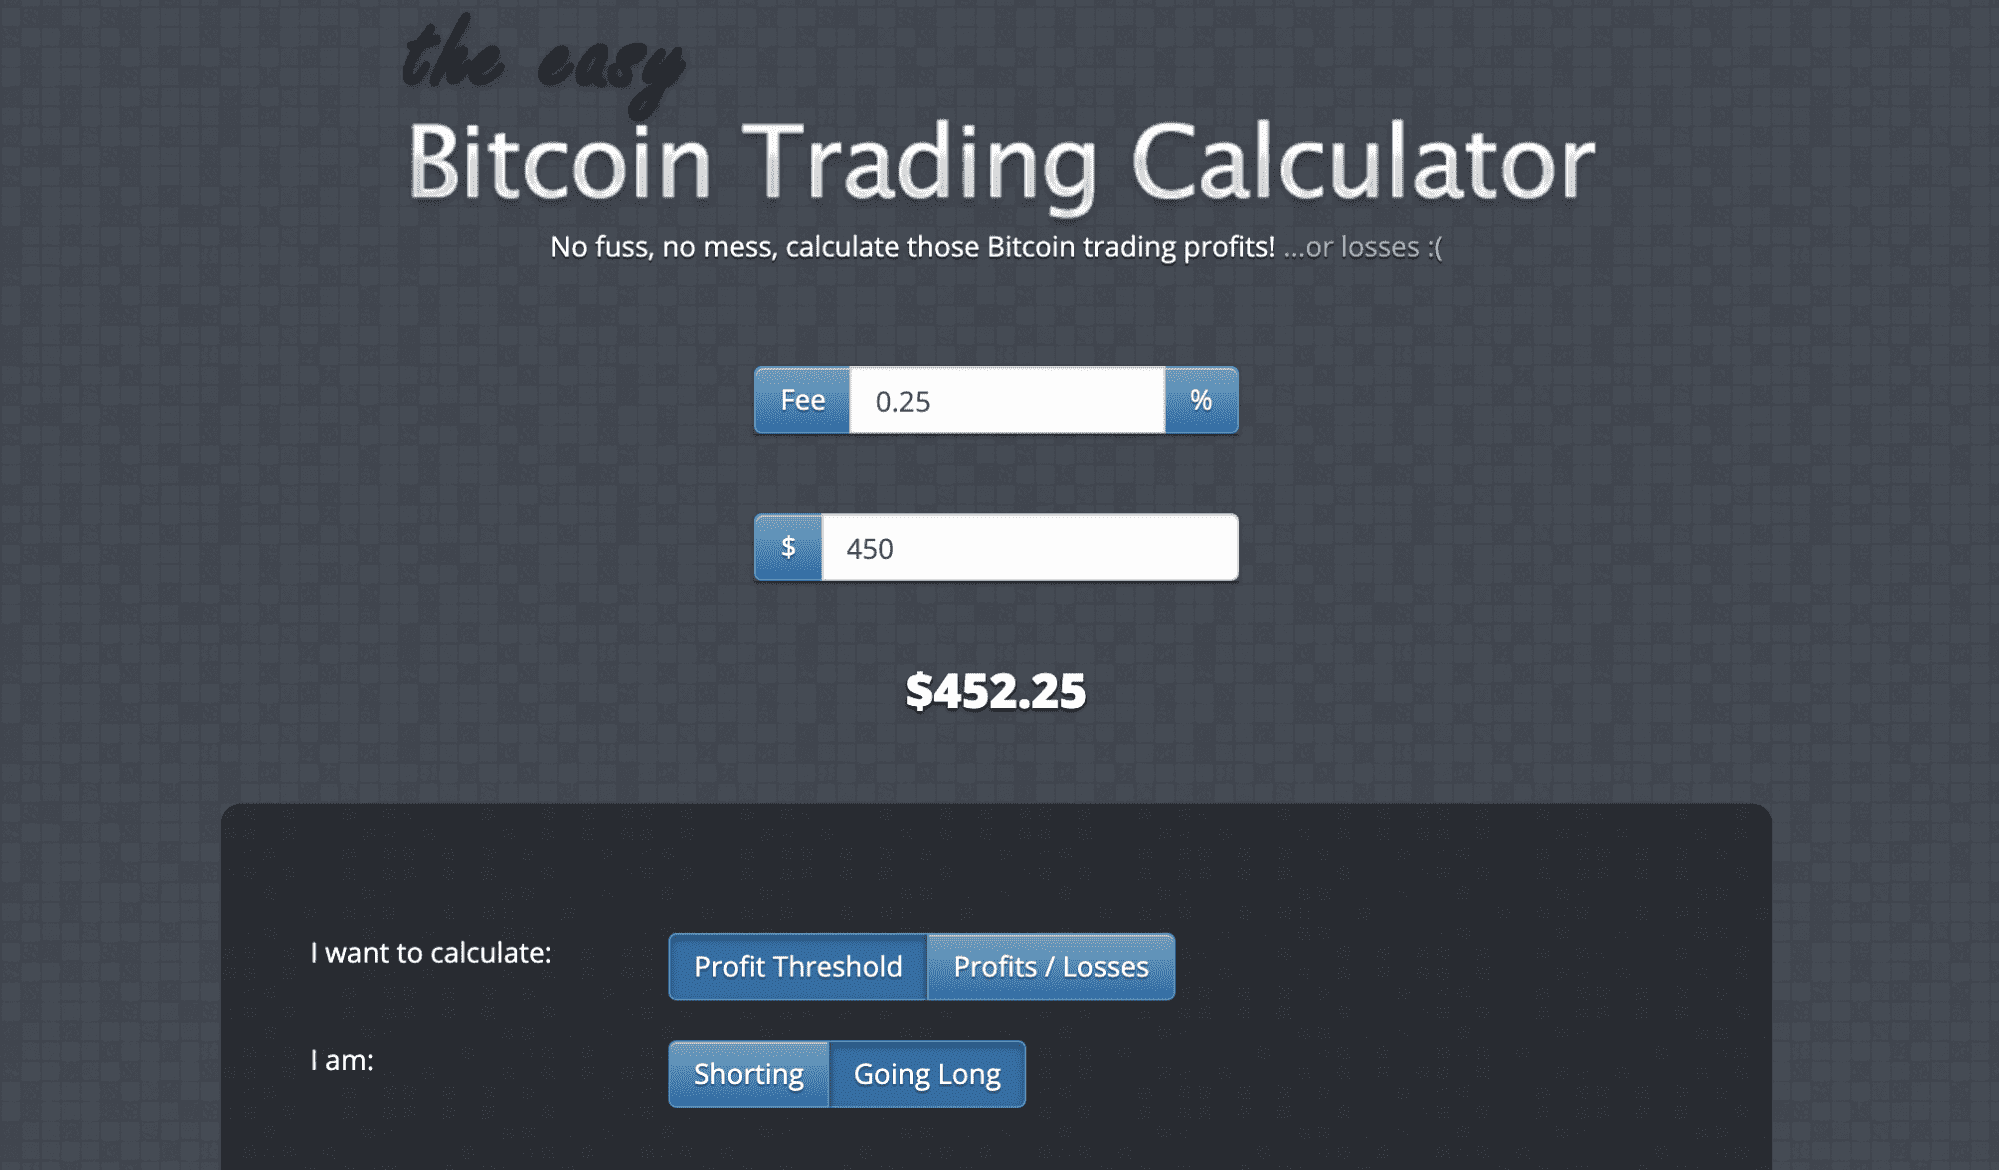 easy Bitcoin Trading Calculator - no fuss, no mess, calculate those Bitcoin trading profits! Do you need to work out bitcoin trading profits? The easy Bitcoin Calculator can do it at the click of a button.